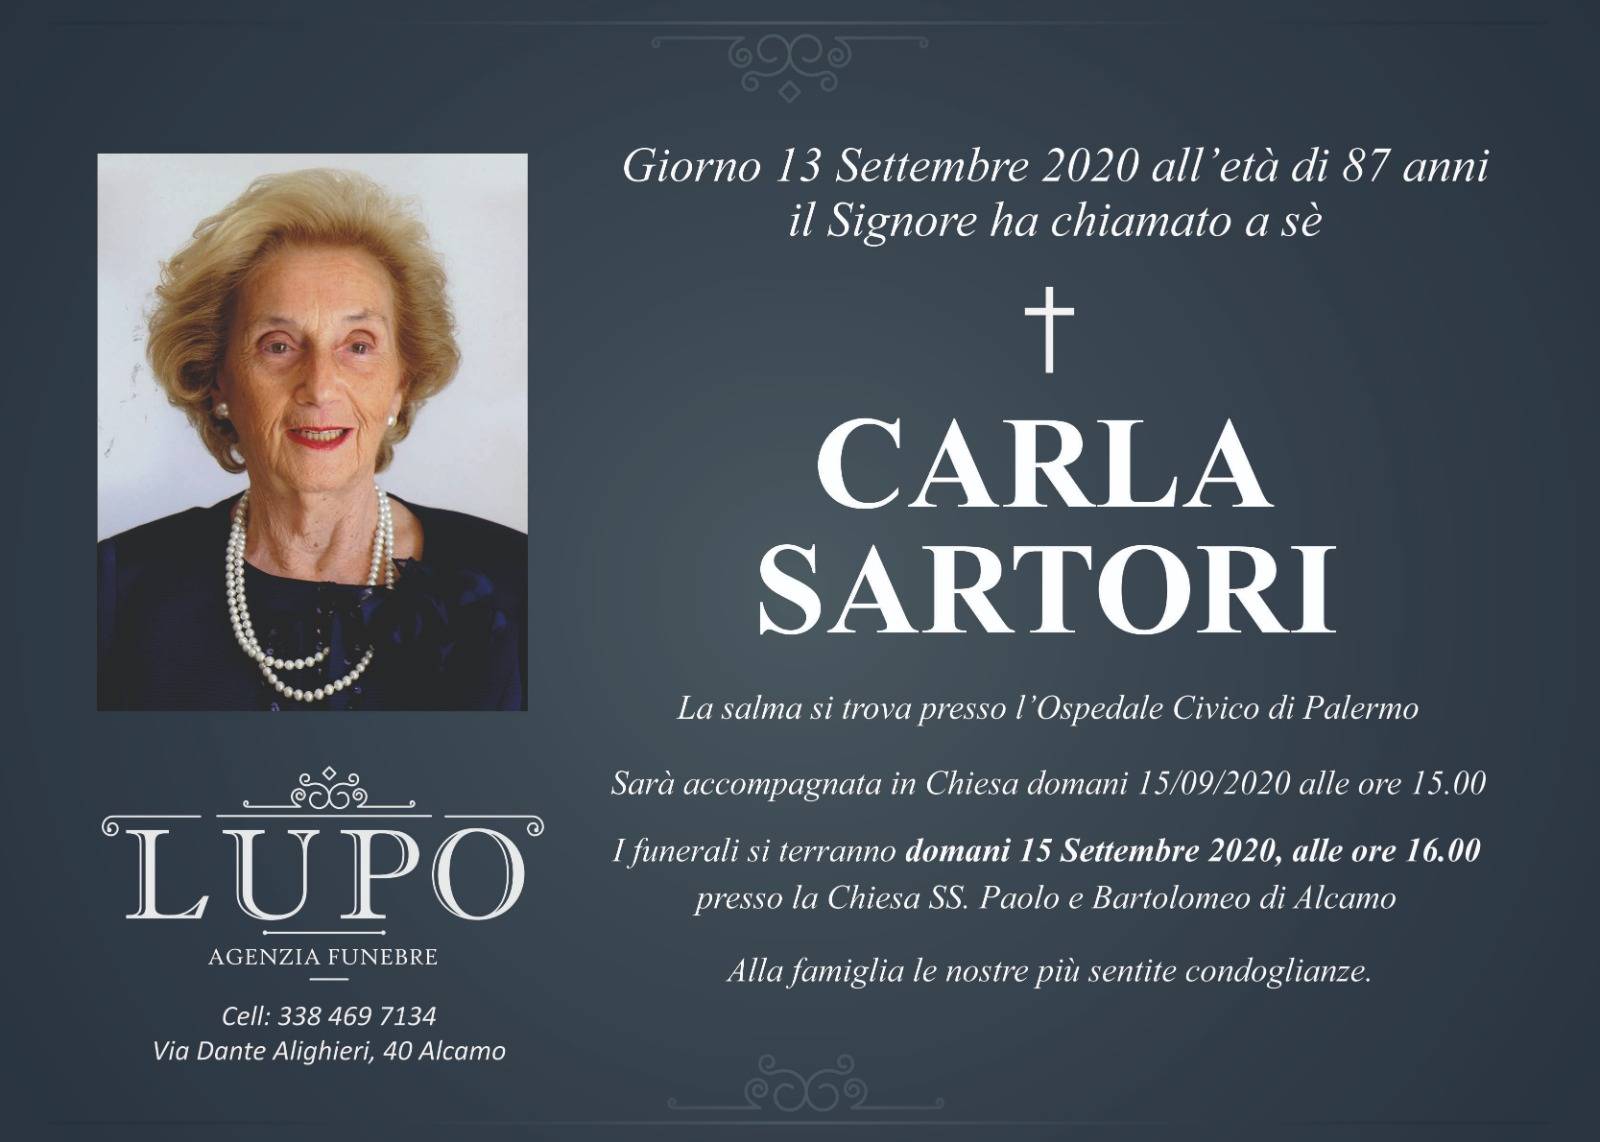 Carla Sartori